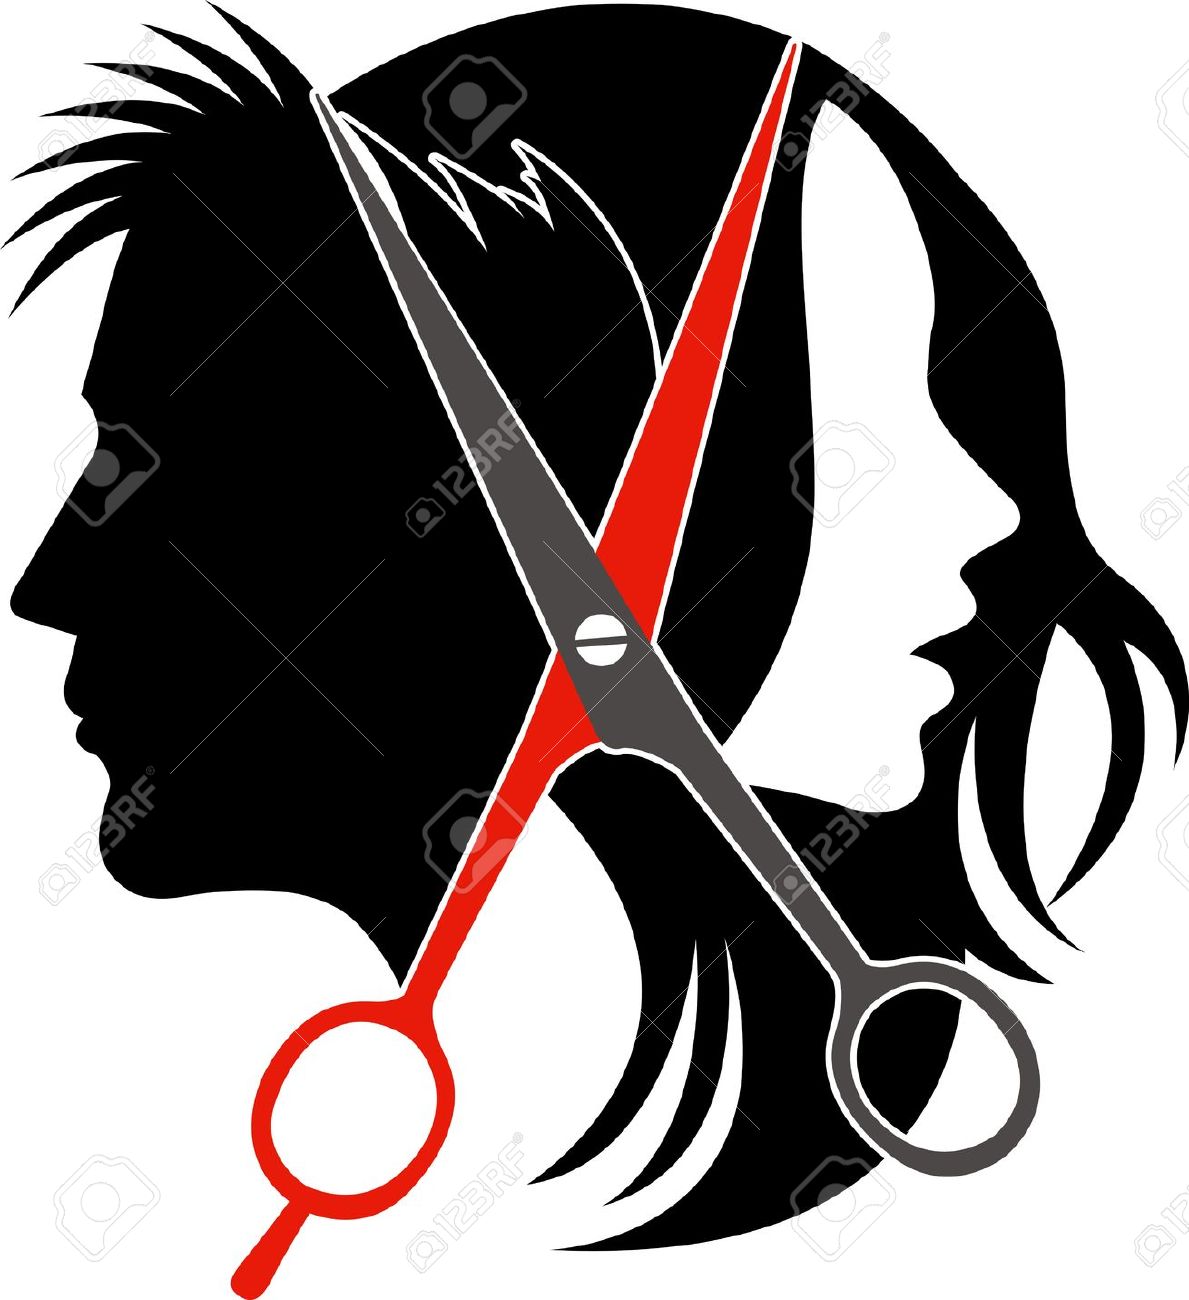 Black hair salon clip art